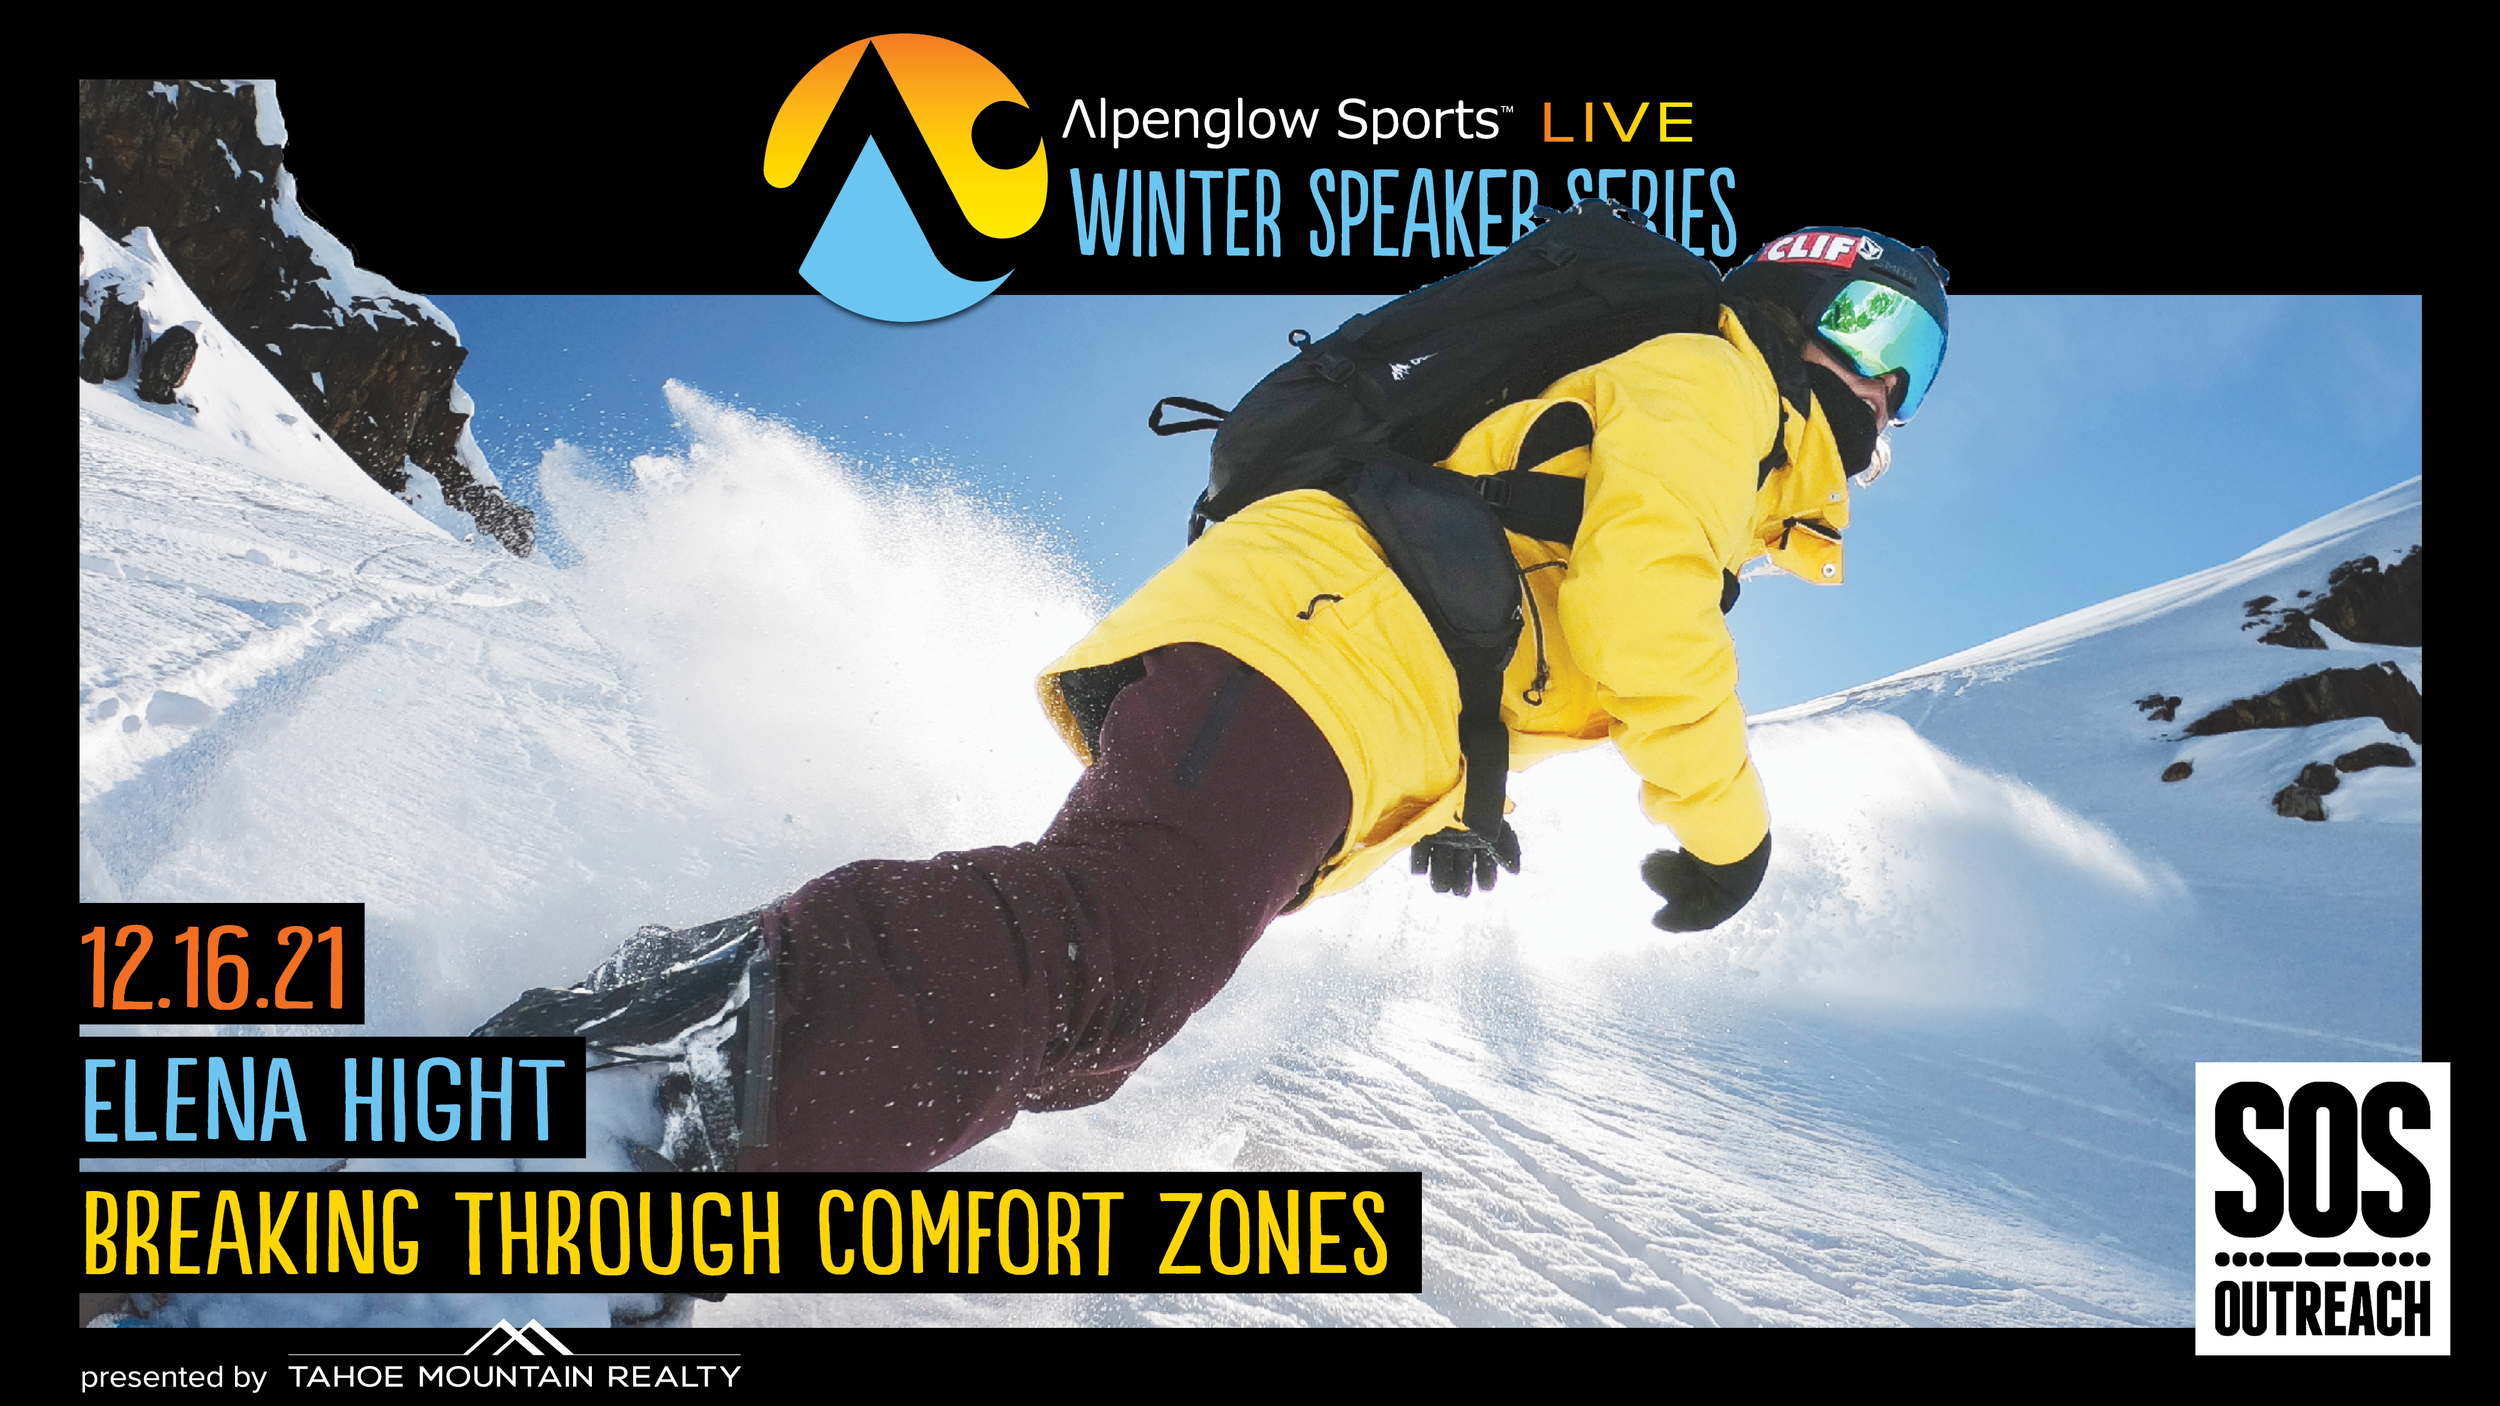 Alpenglow Winter Speaker Series Presents Elena Hight “Breaking Through Comfort Zones” — Wildbound Live